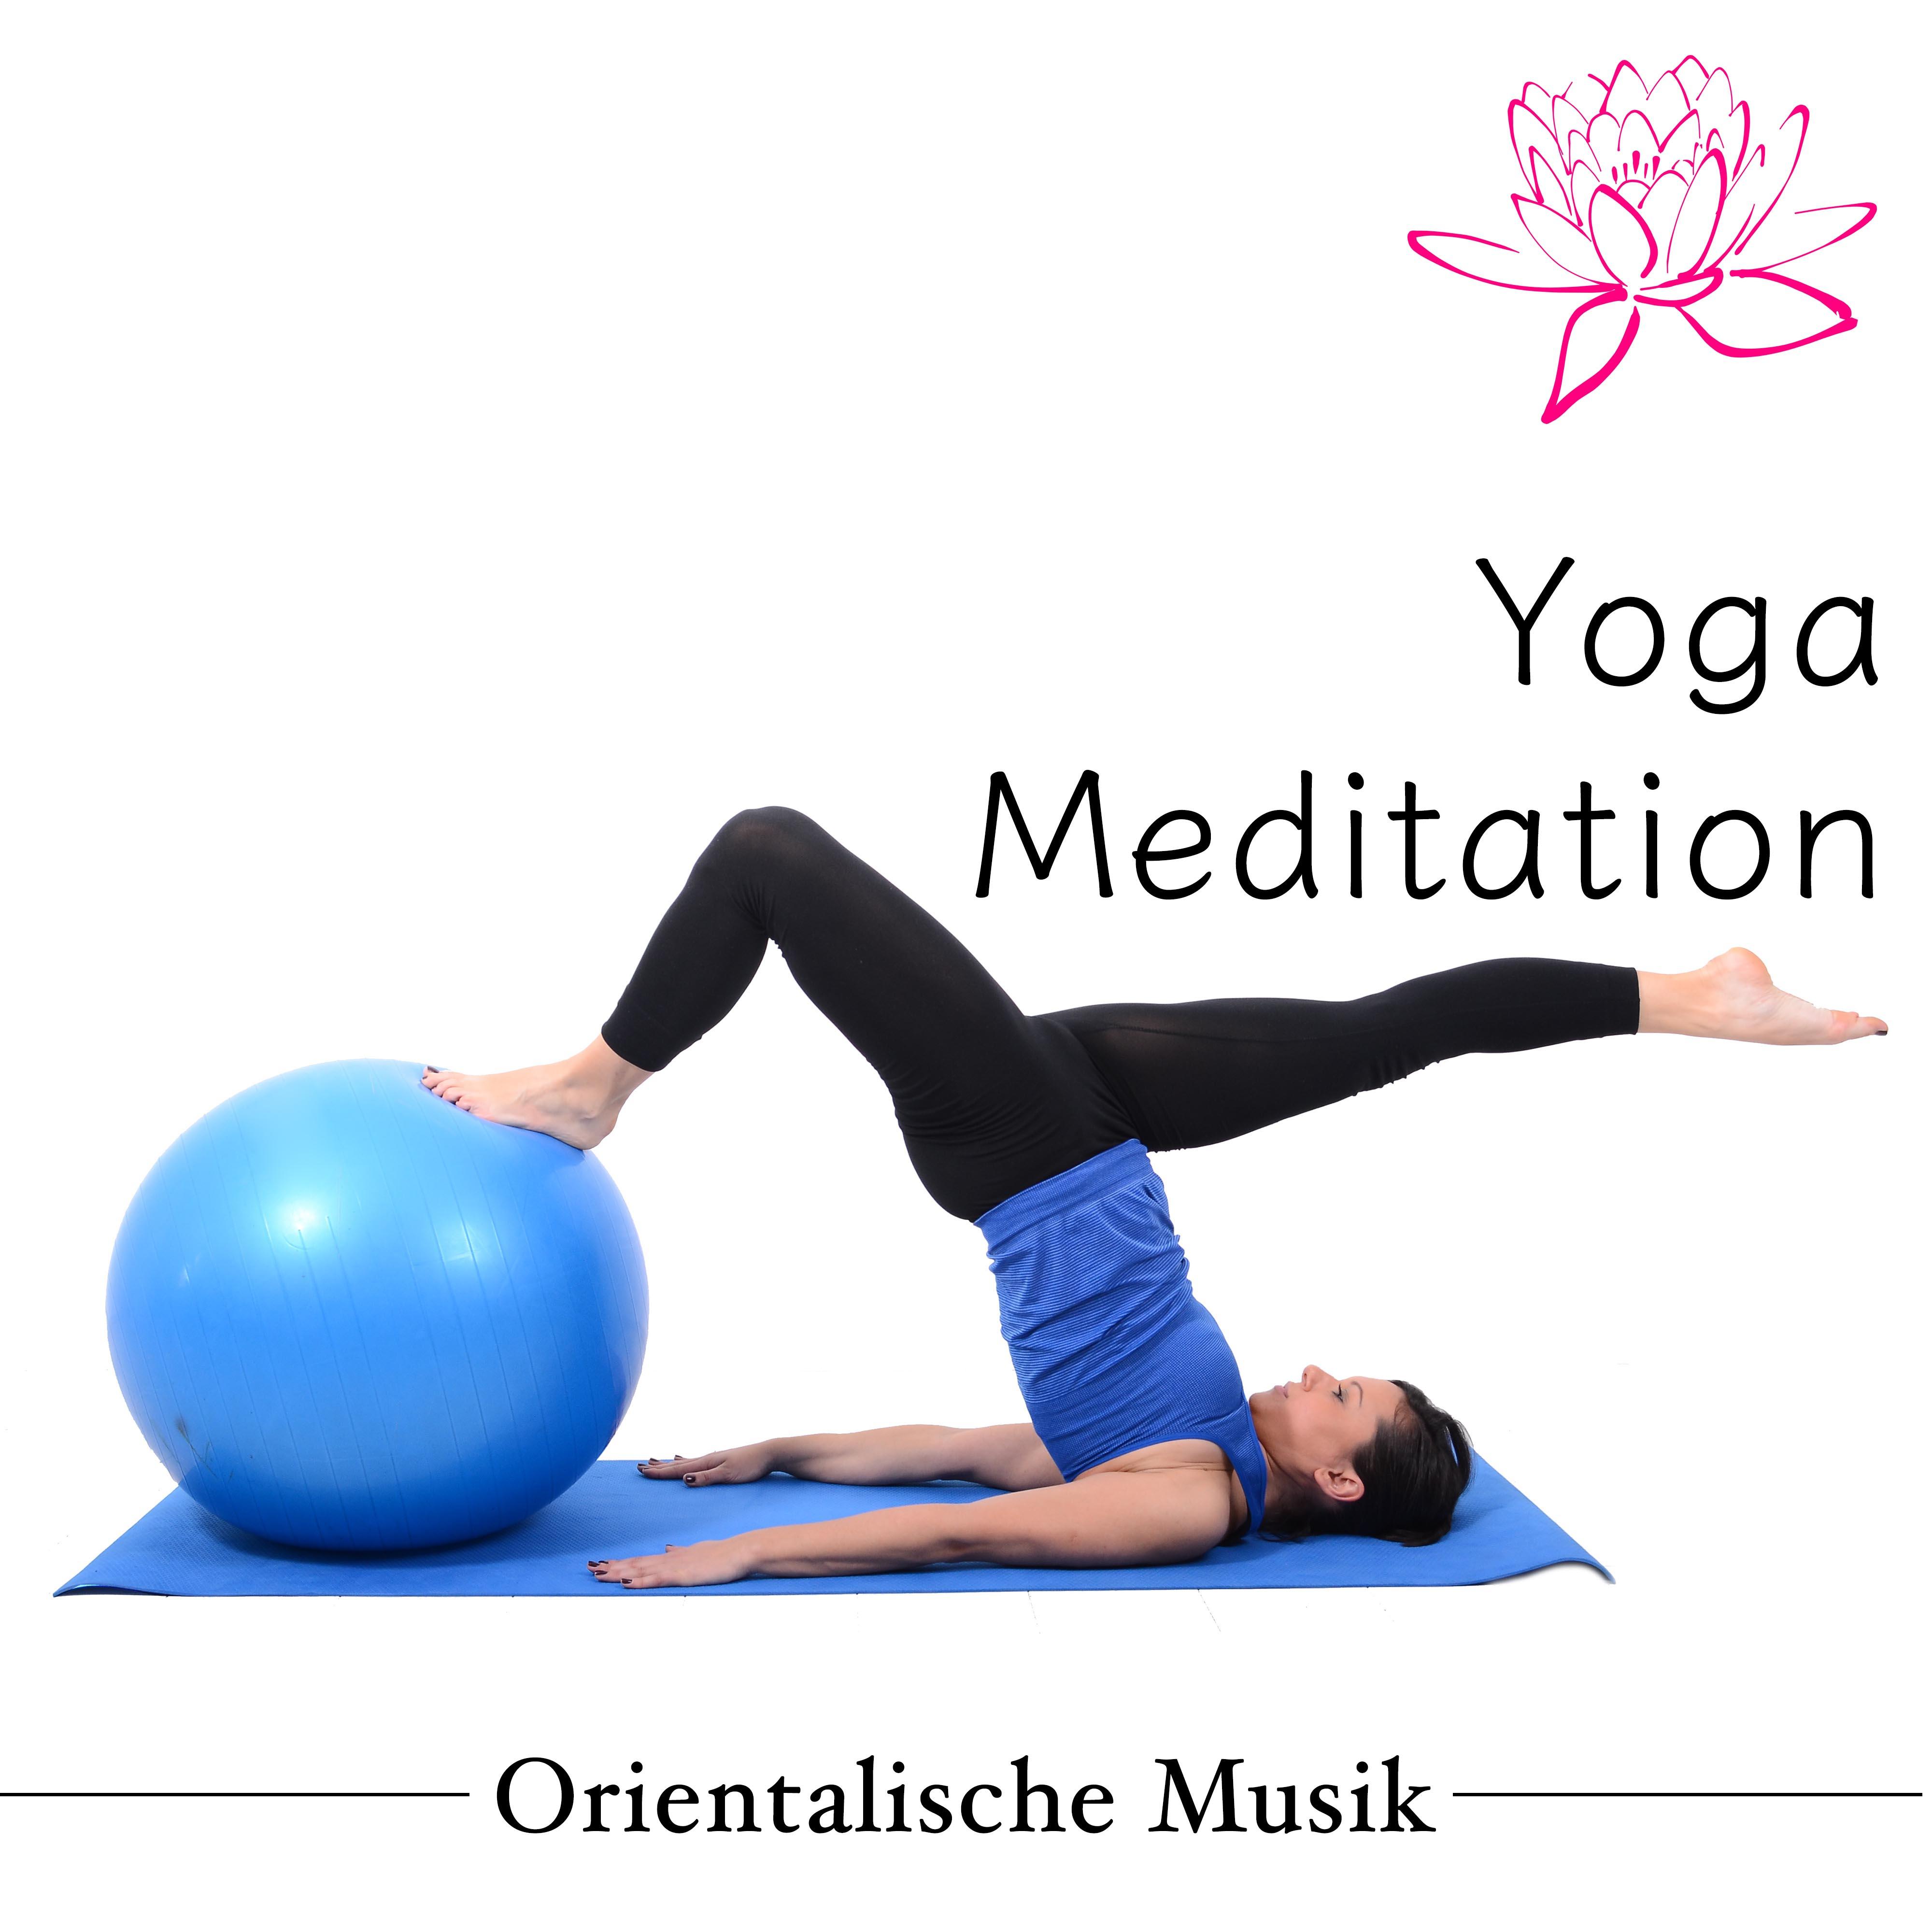 Yoga Meditation  Orientalische Musik fü r Yoga Ü bungen und Yoga Ausbildung